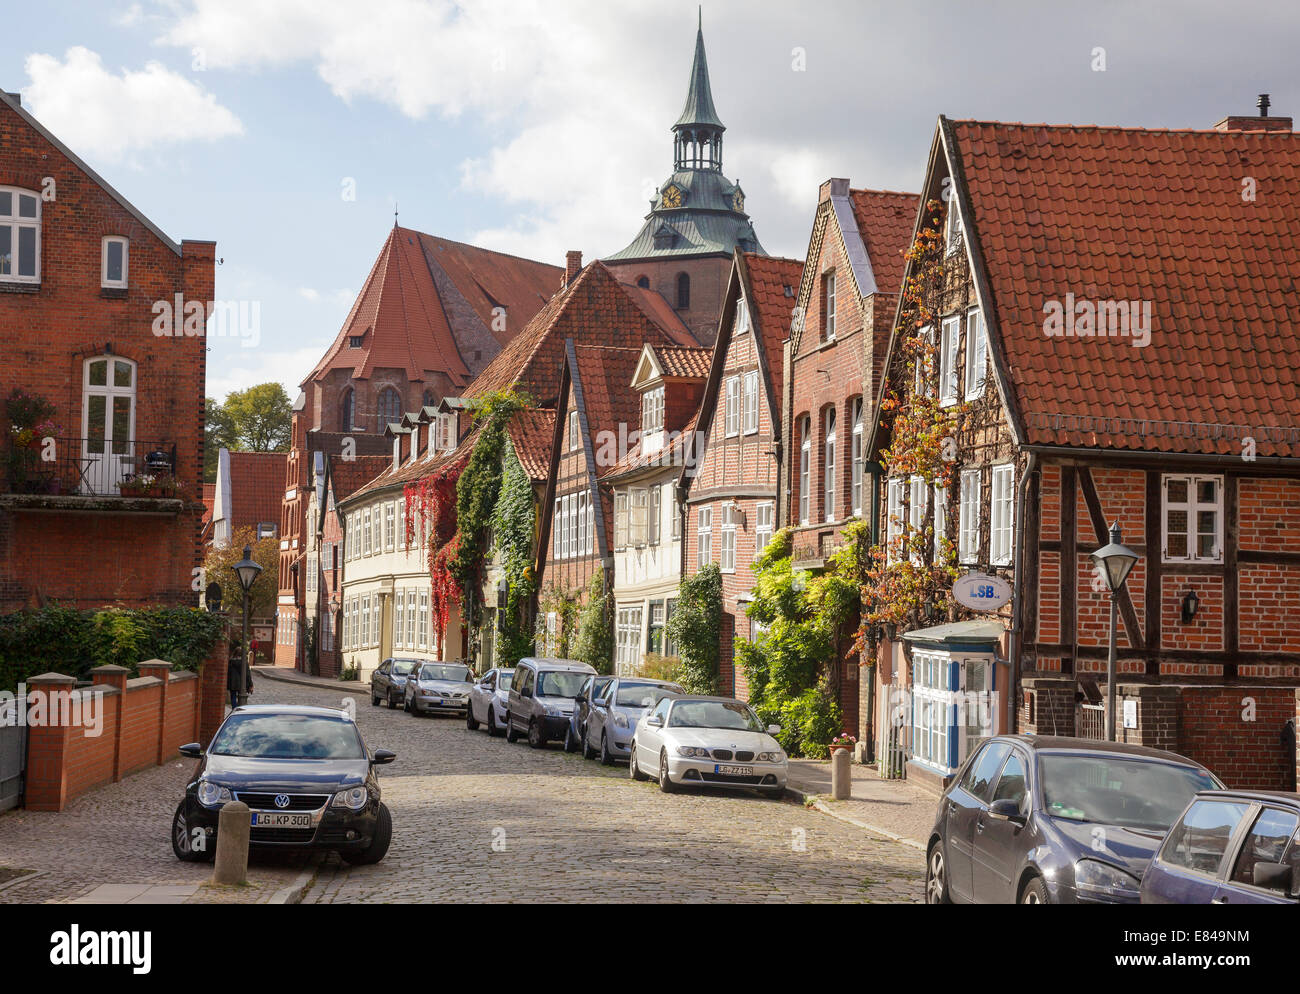 Rue typique de la vieille ville, Auf dem Meer, Lunebourg, Basse-Saxe, Allemagne Banque D'Images